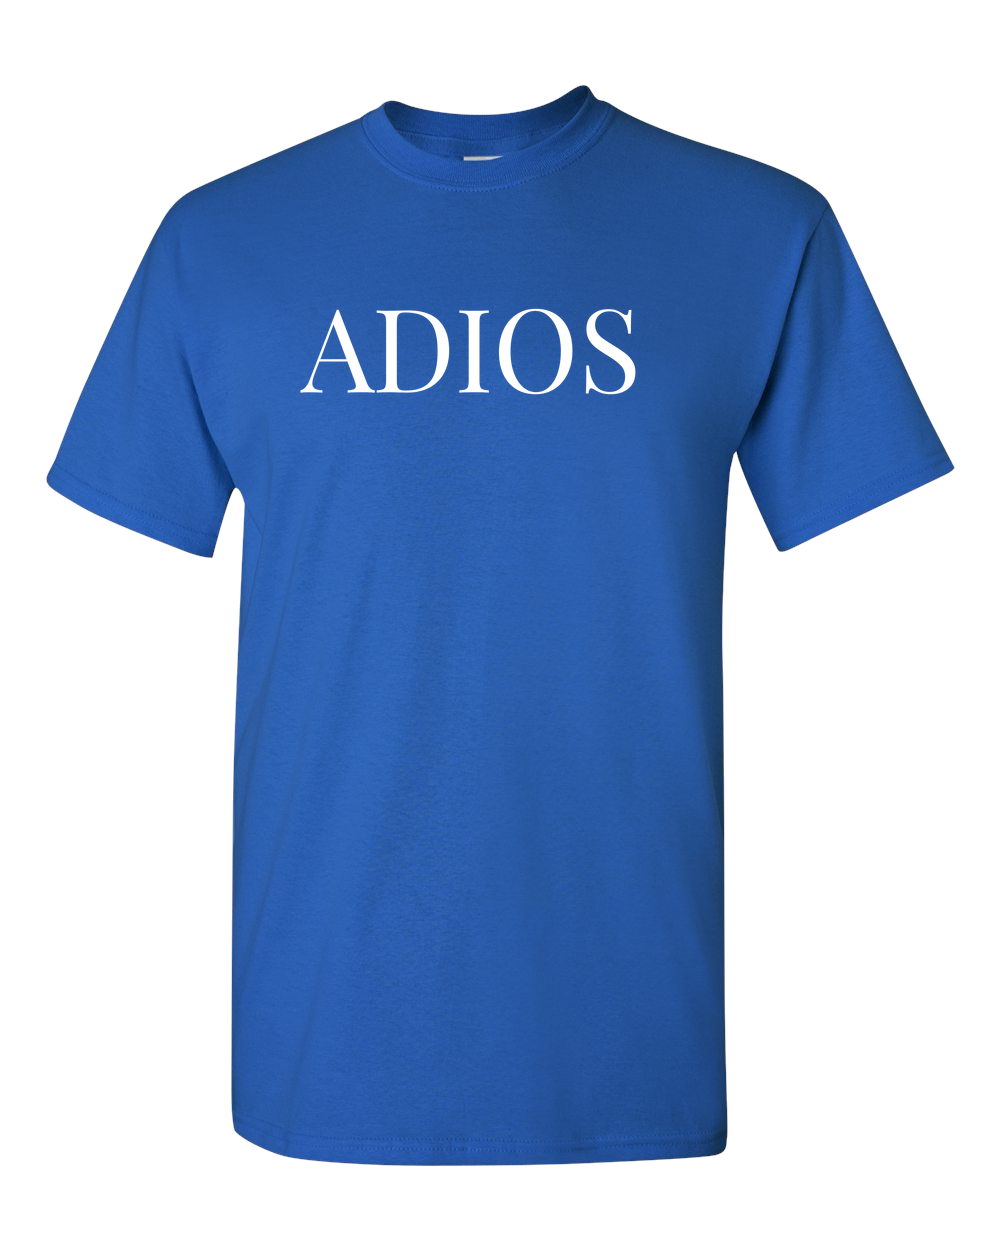 Adios Adios Spanish Funny T-Shirt